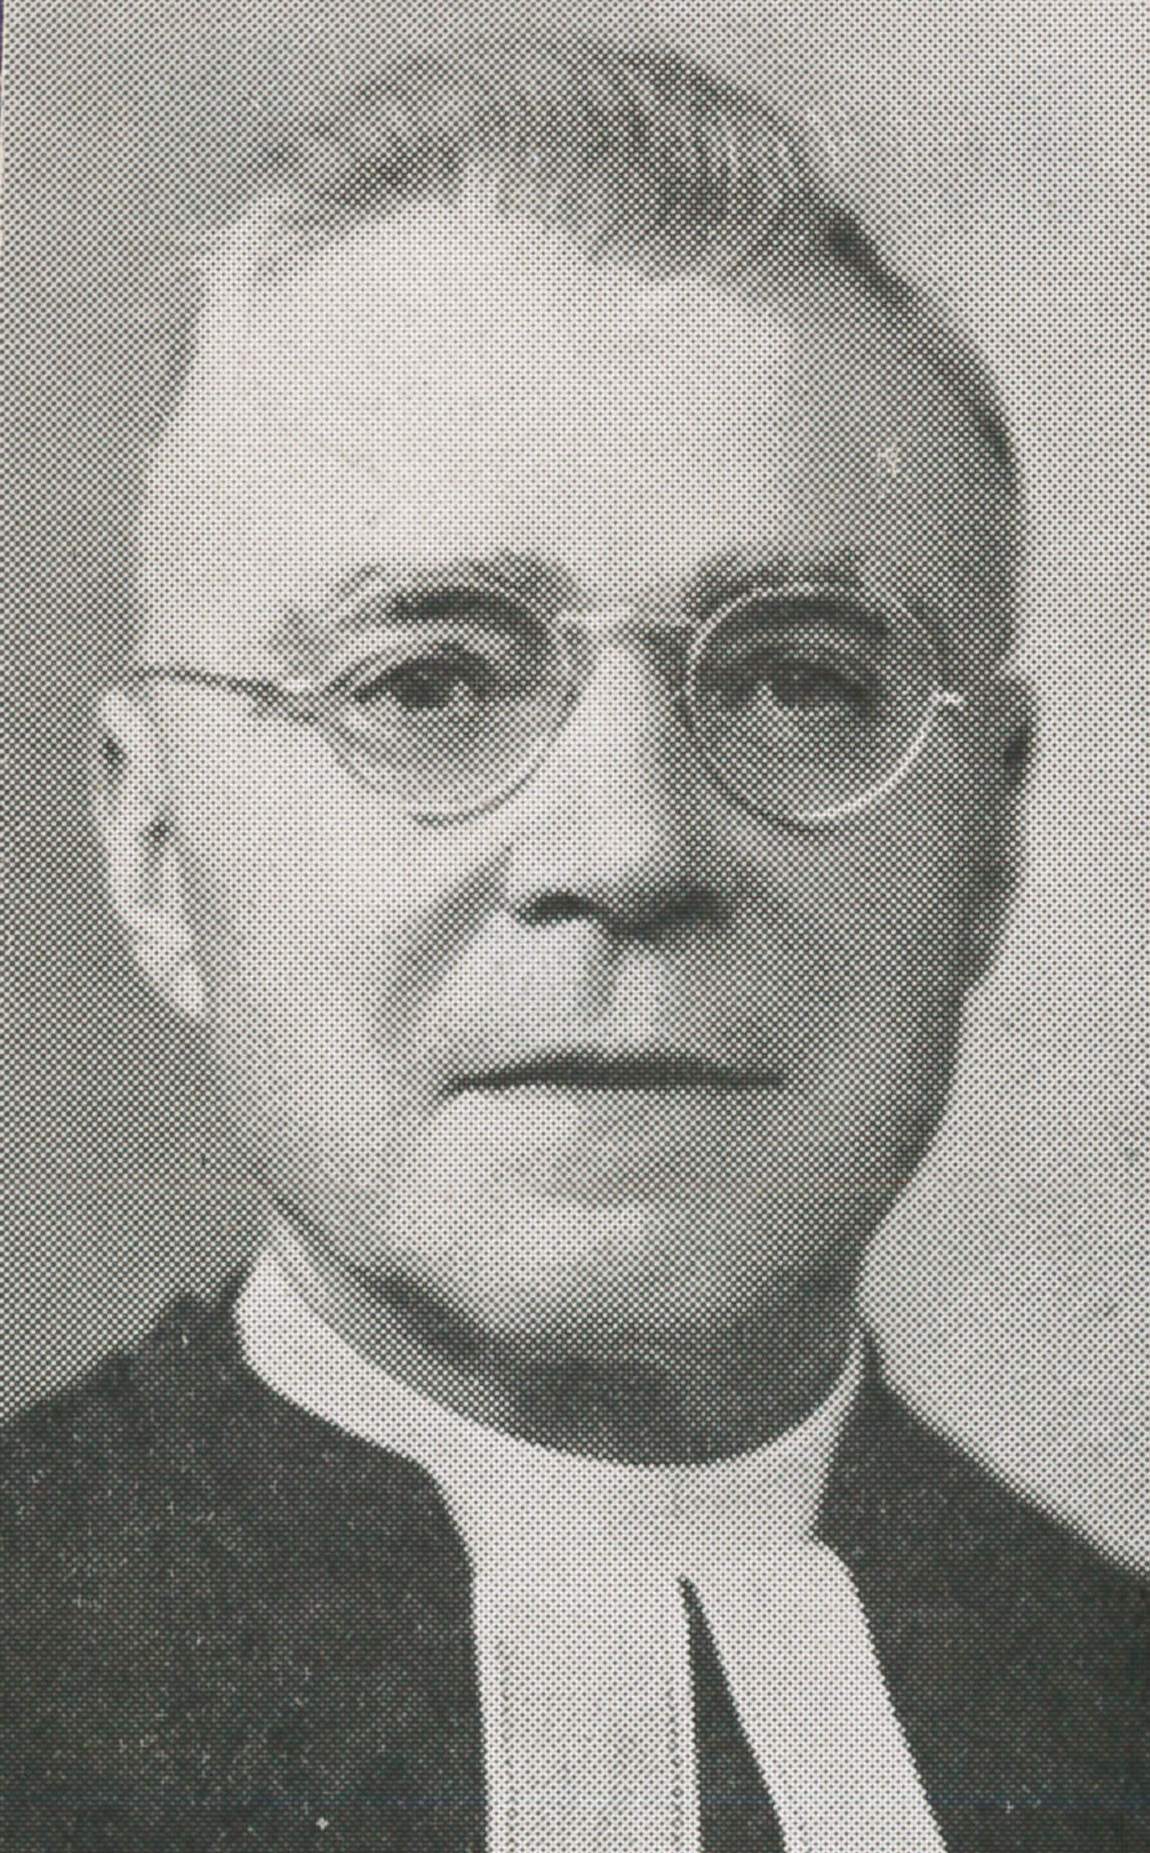 Rev. H. W. Ellenberger